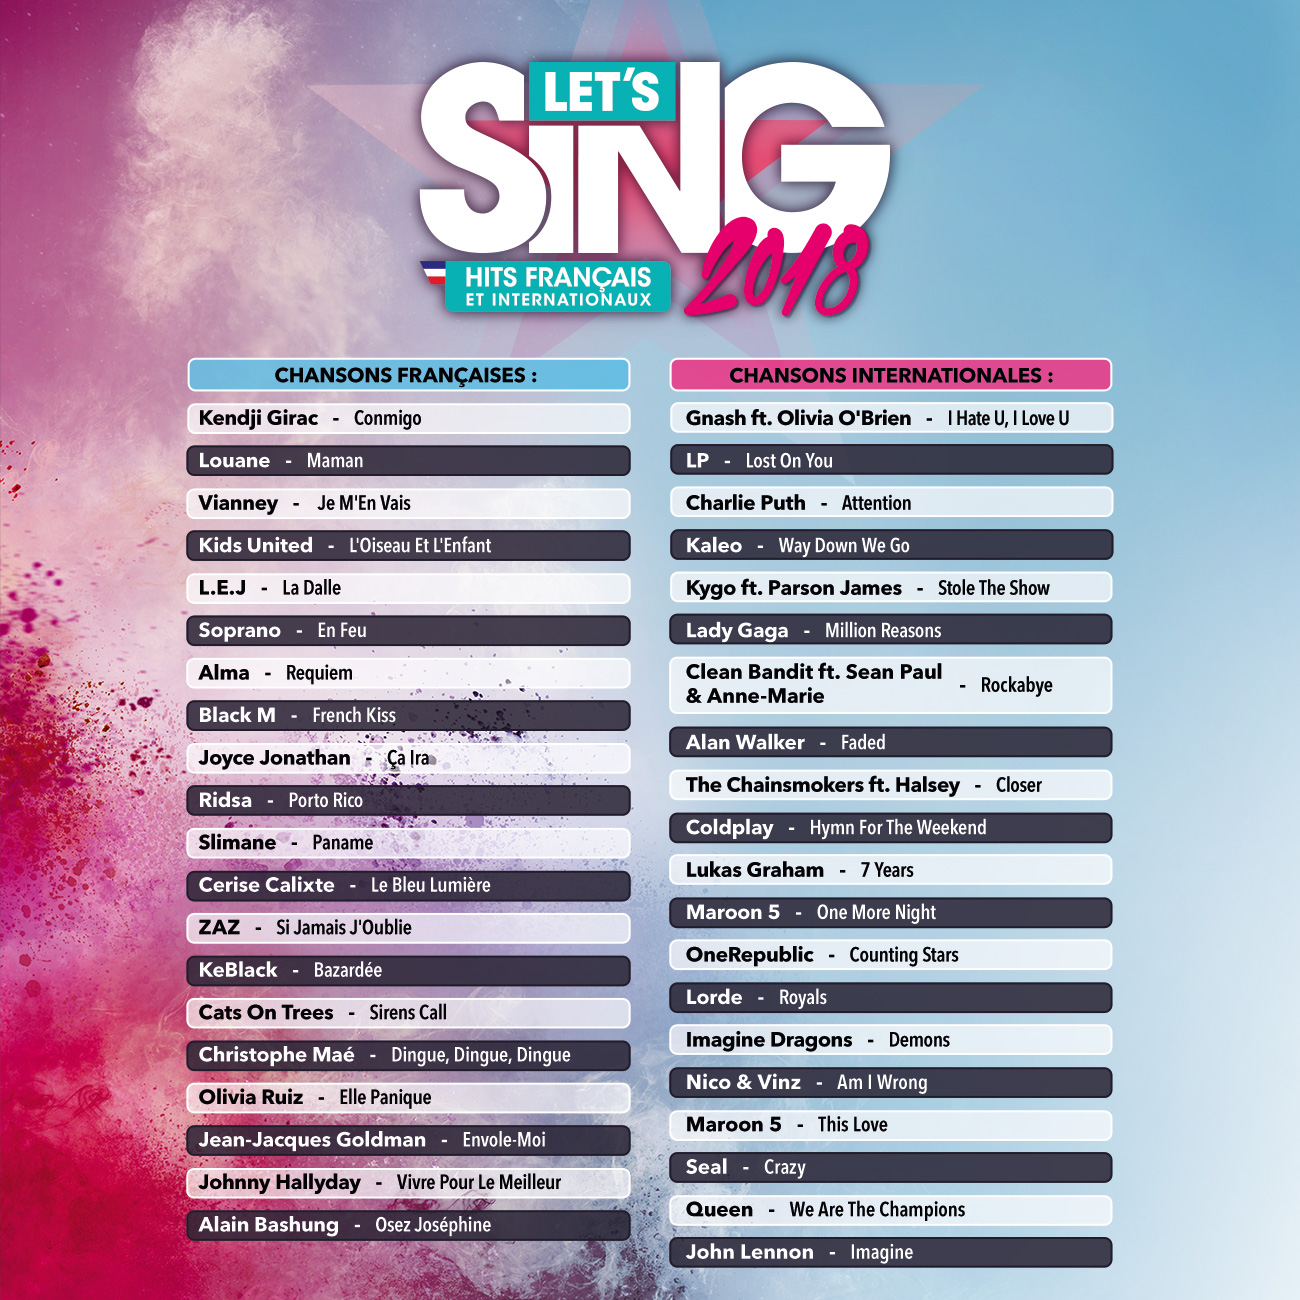 Let's Sing 2018 Hits Français et Internationaux - Playlist